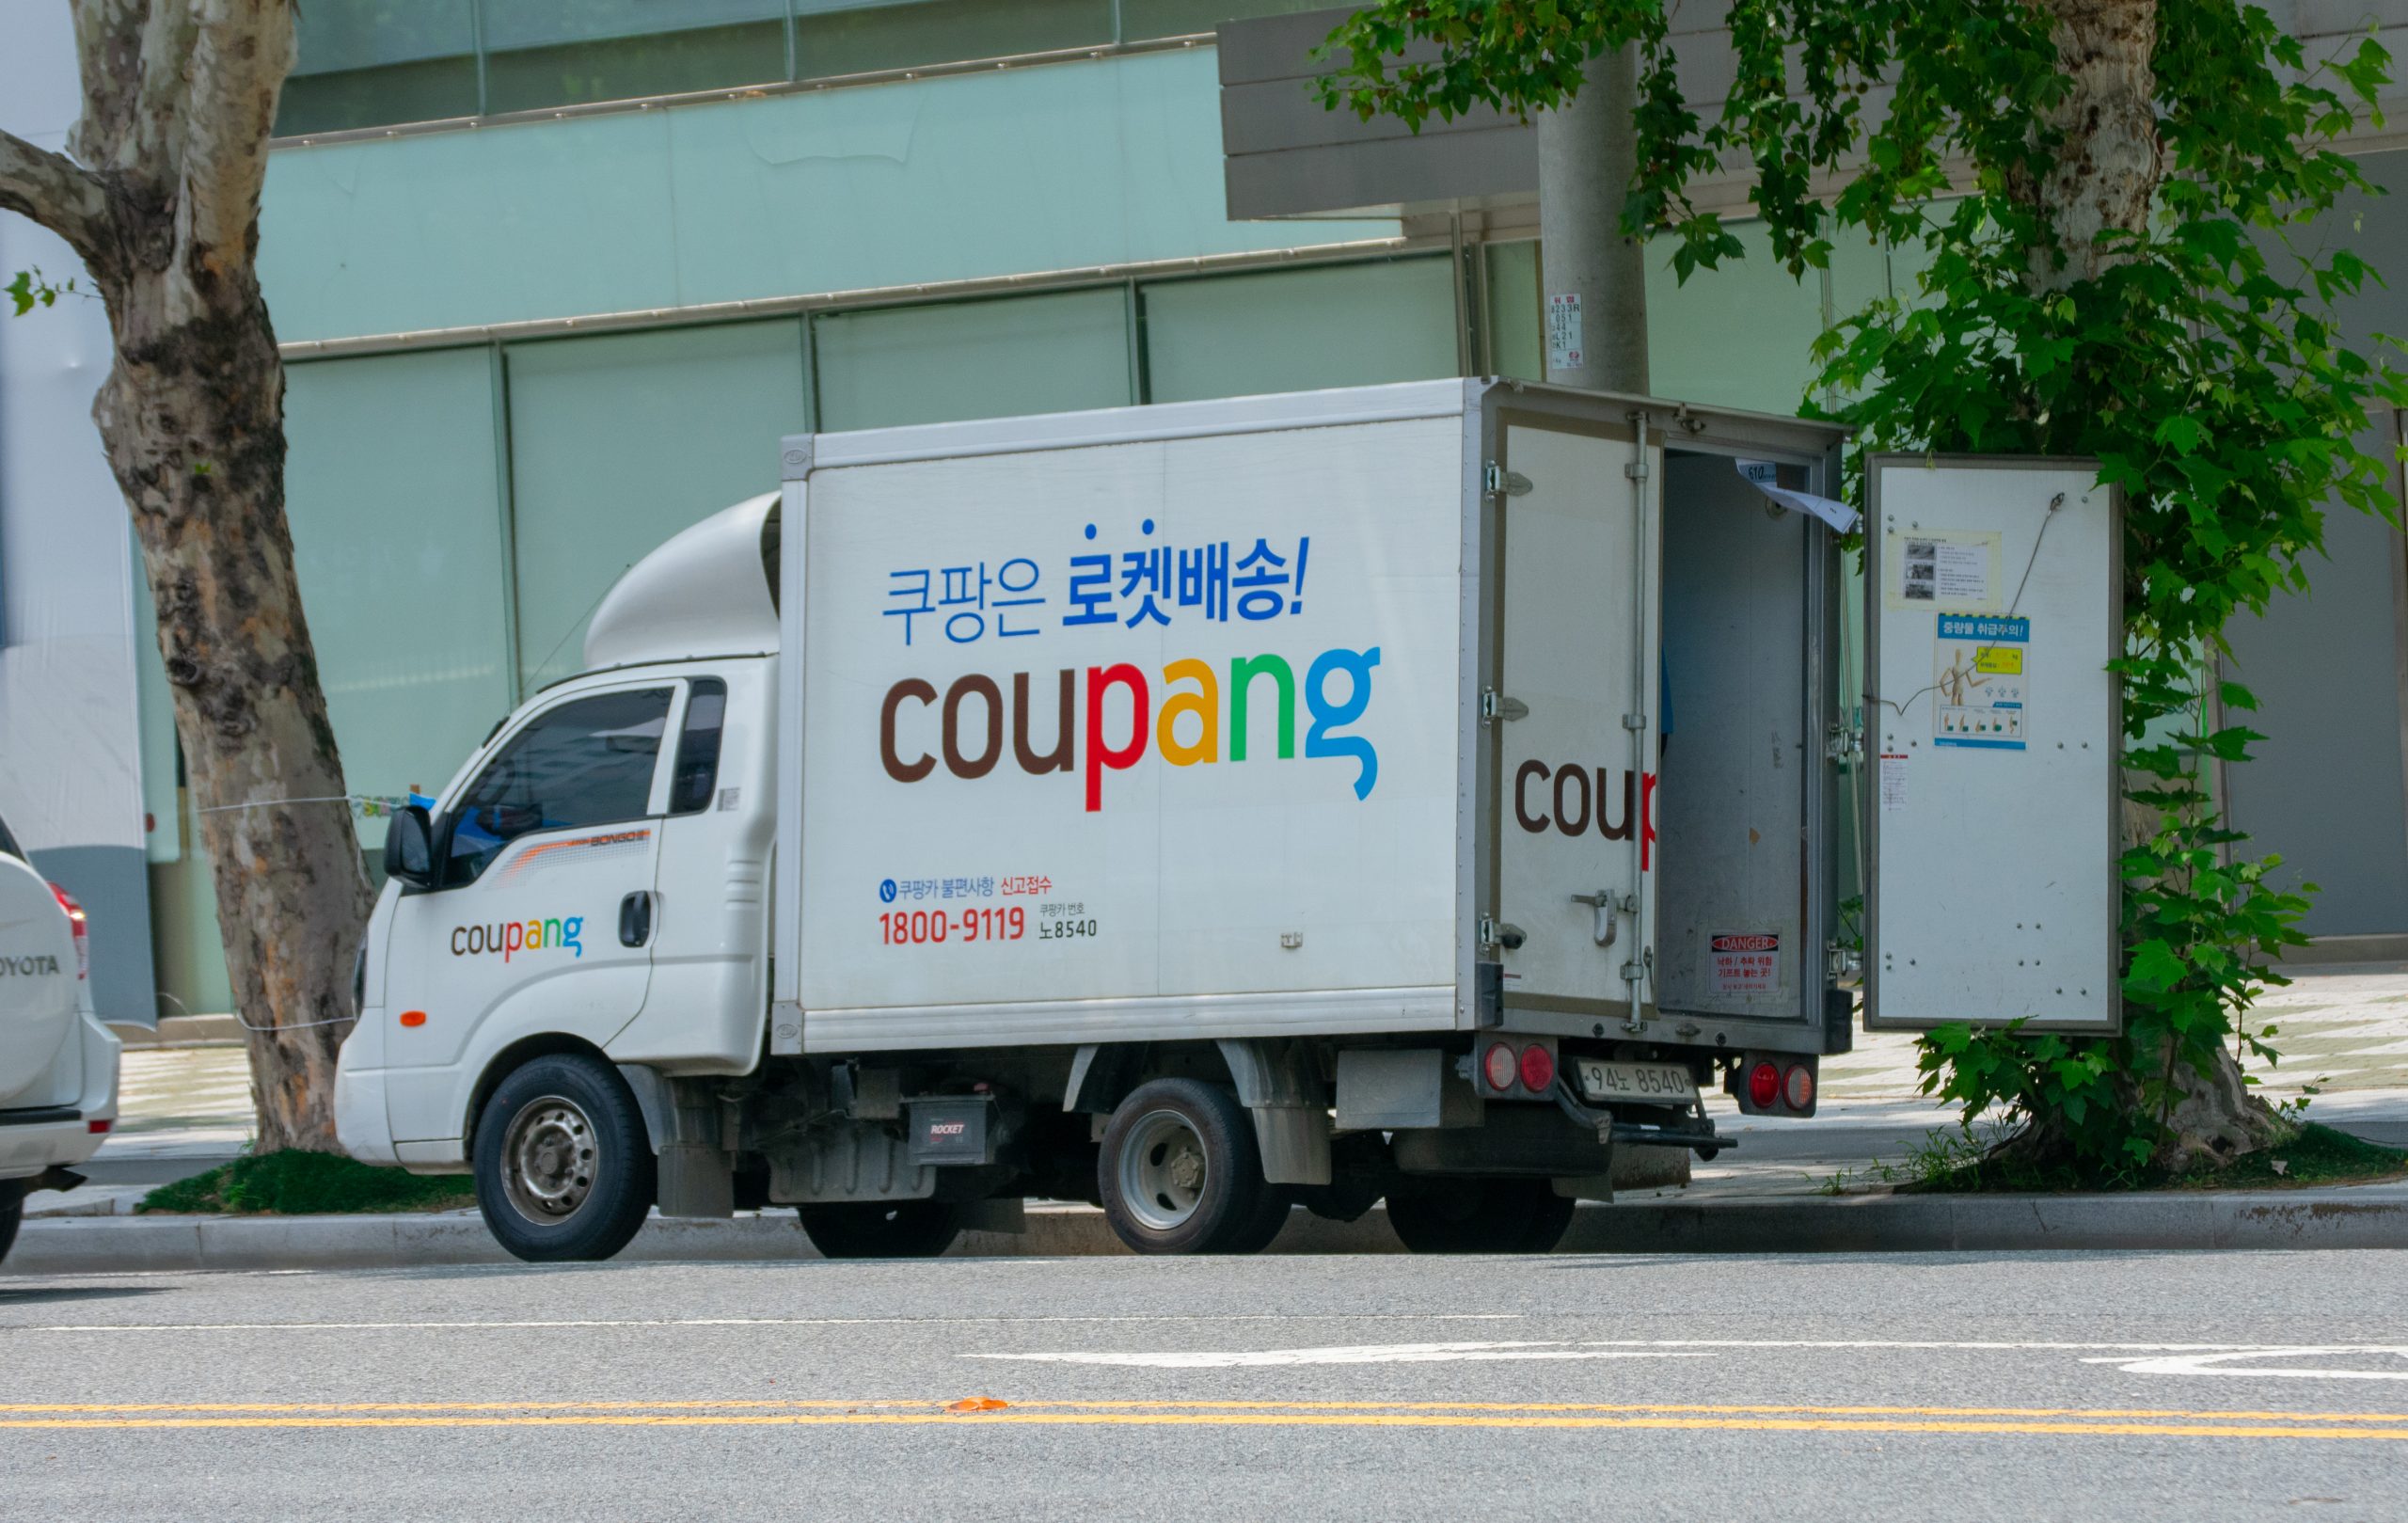 Coupang truck via Shutterstock